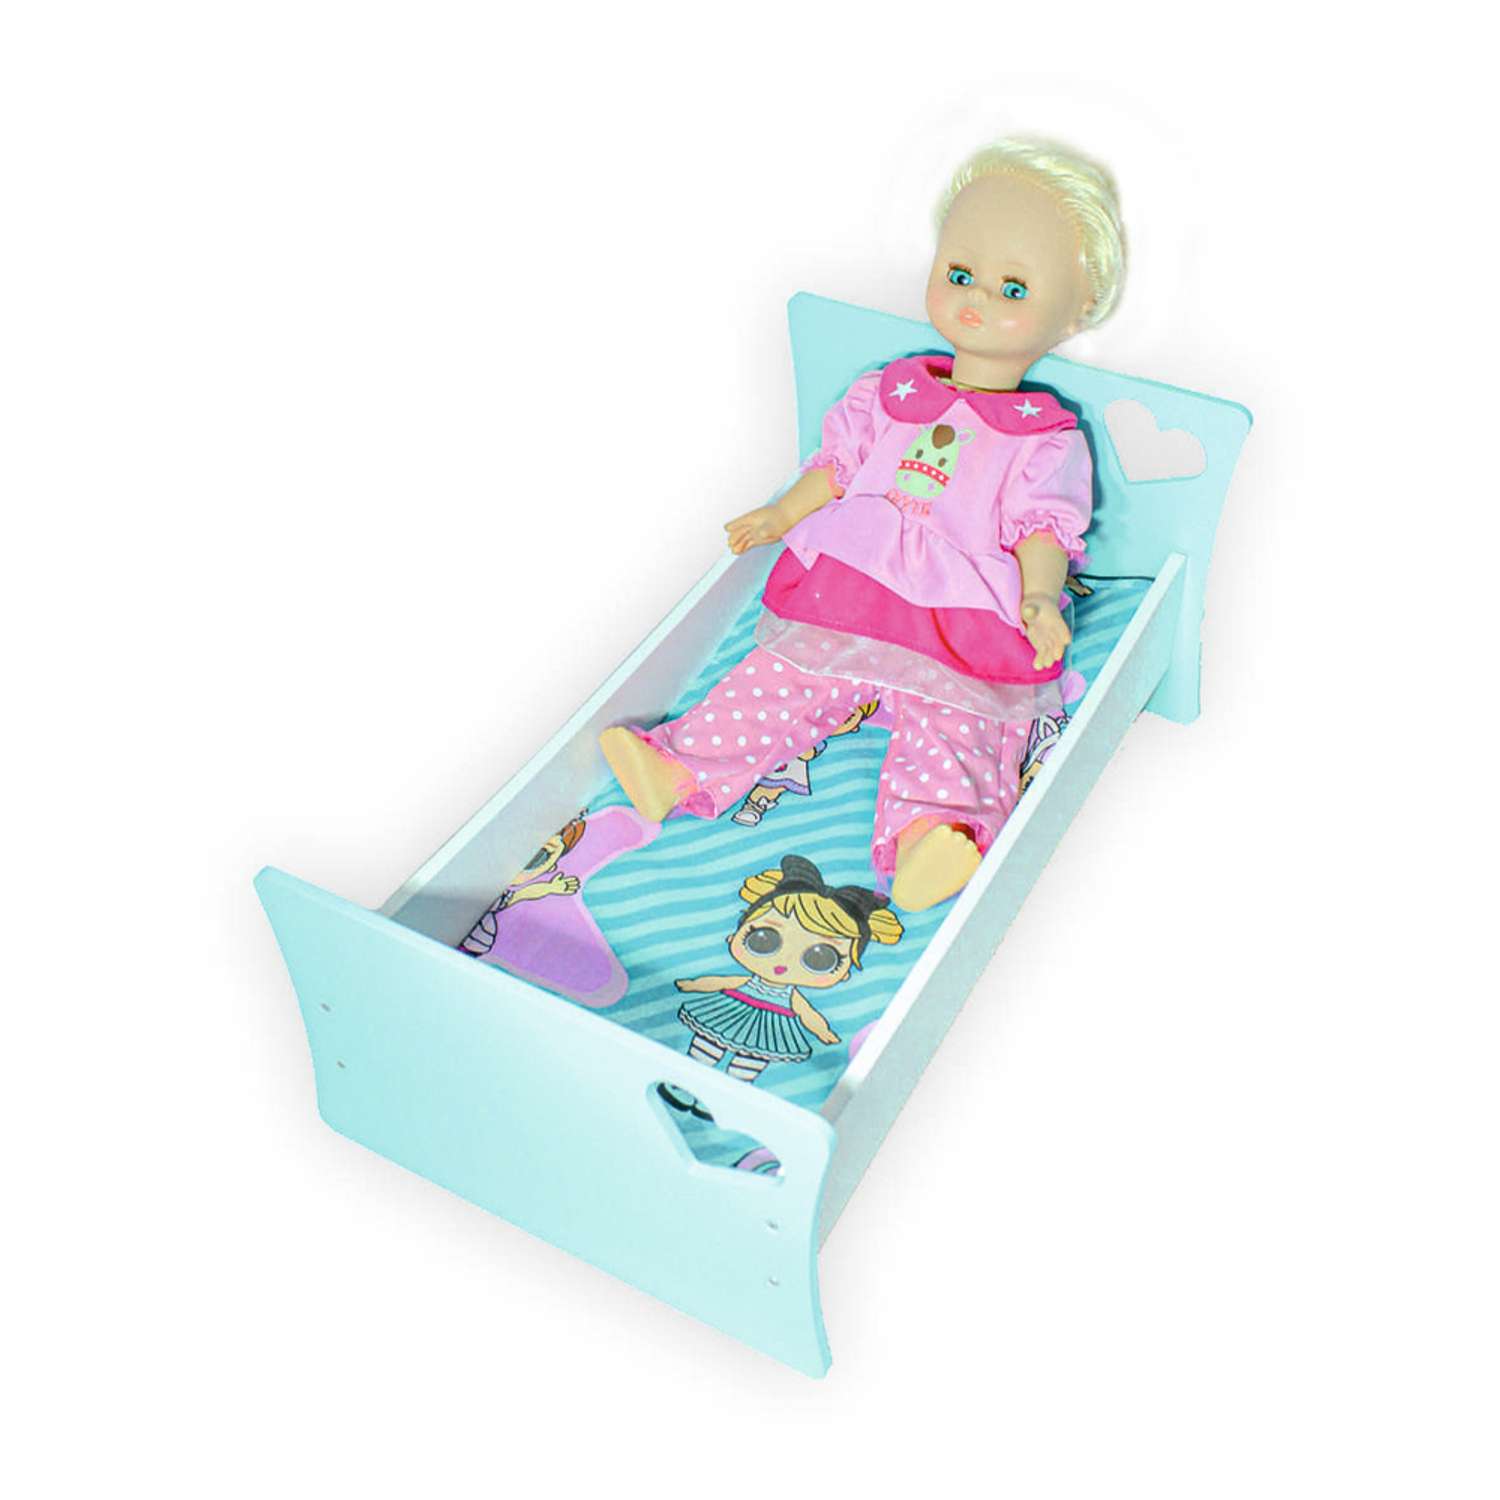 Мебель для кукол ViromToys Кроватка голубая Кд0021 - фото 1